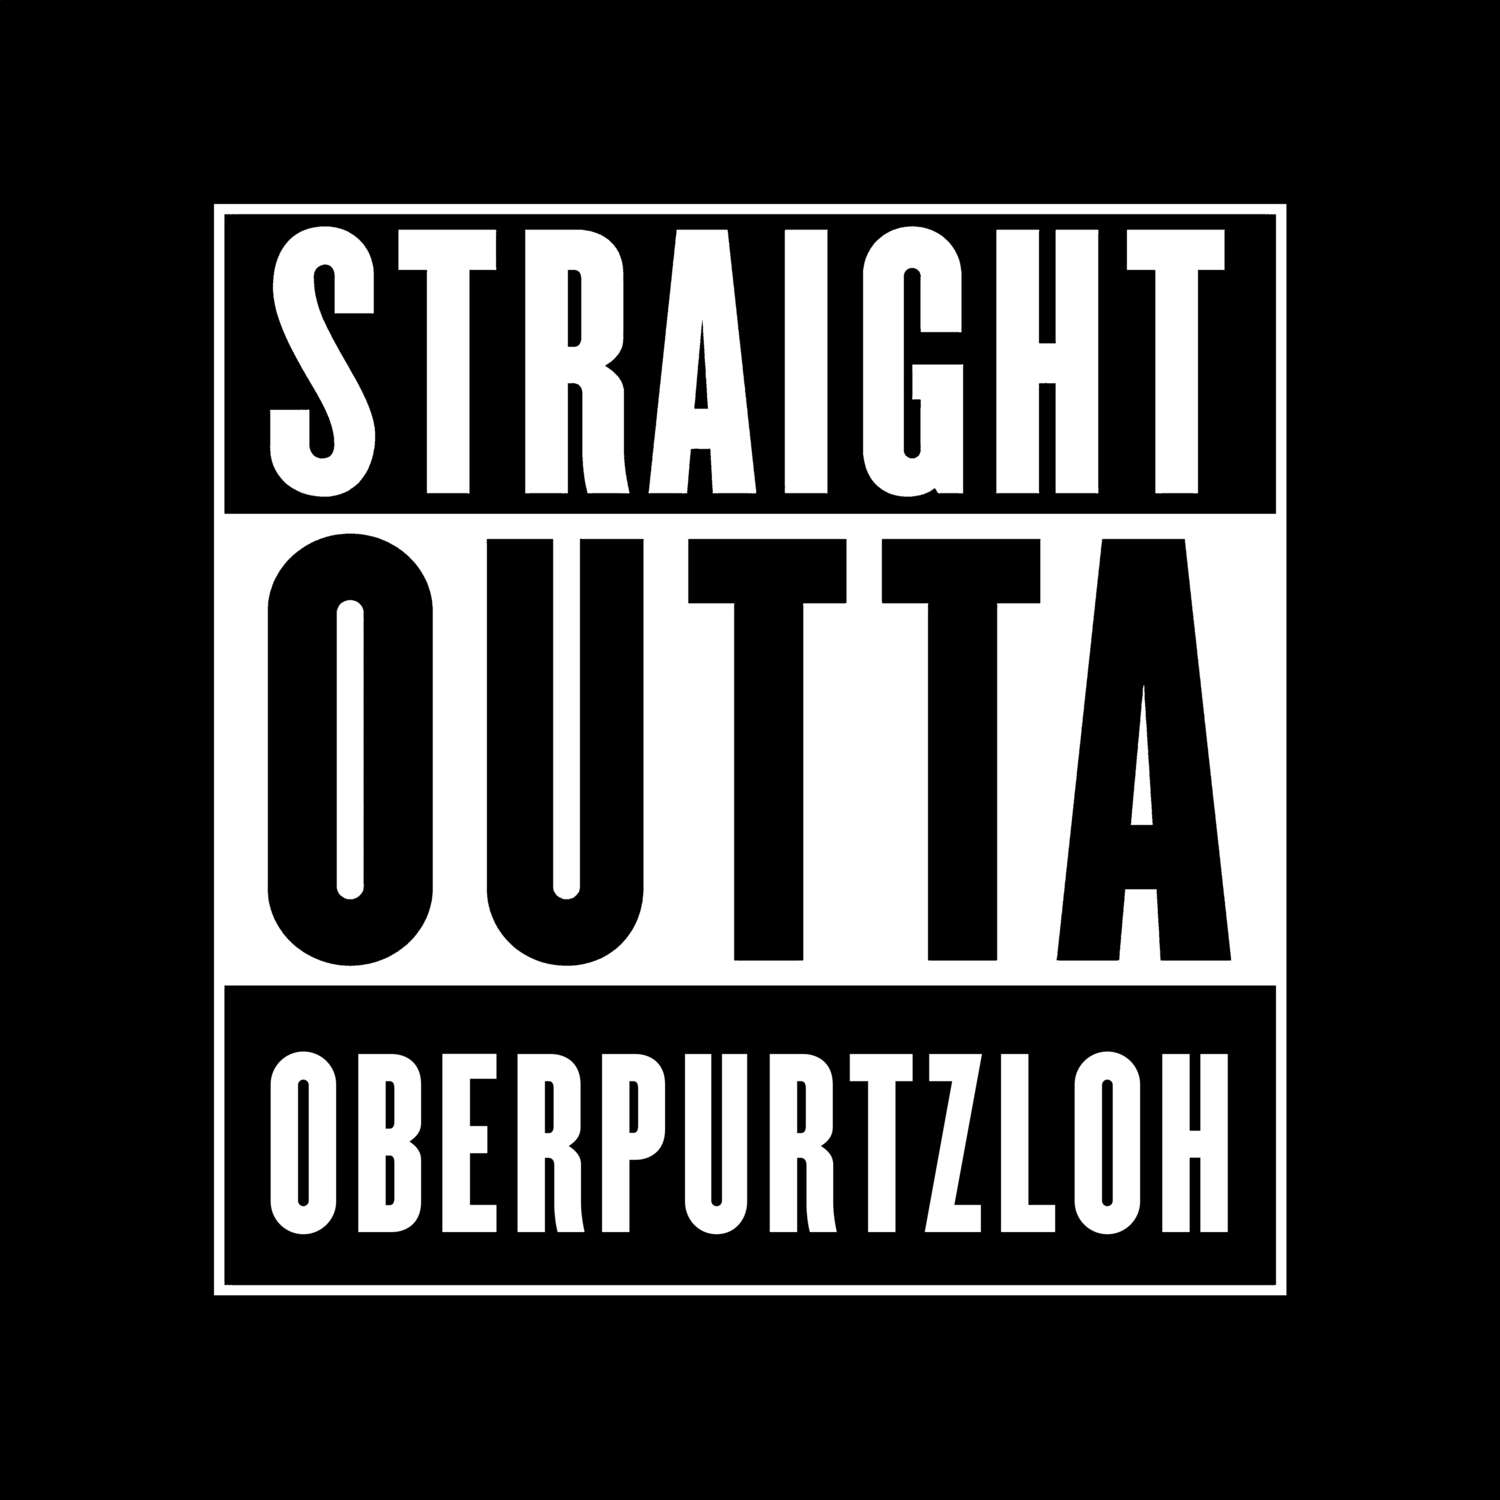 Oberpurtzloh T-Shirt »Straight Outta«